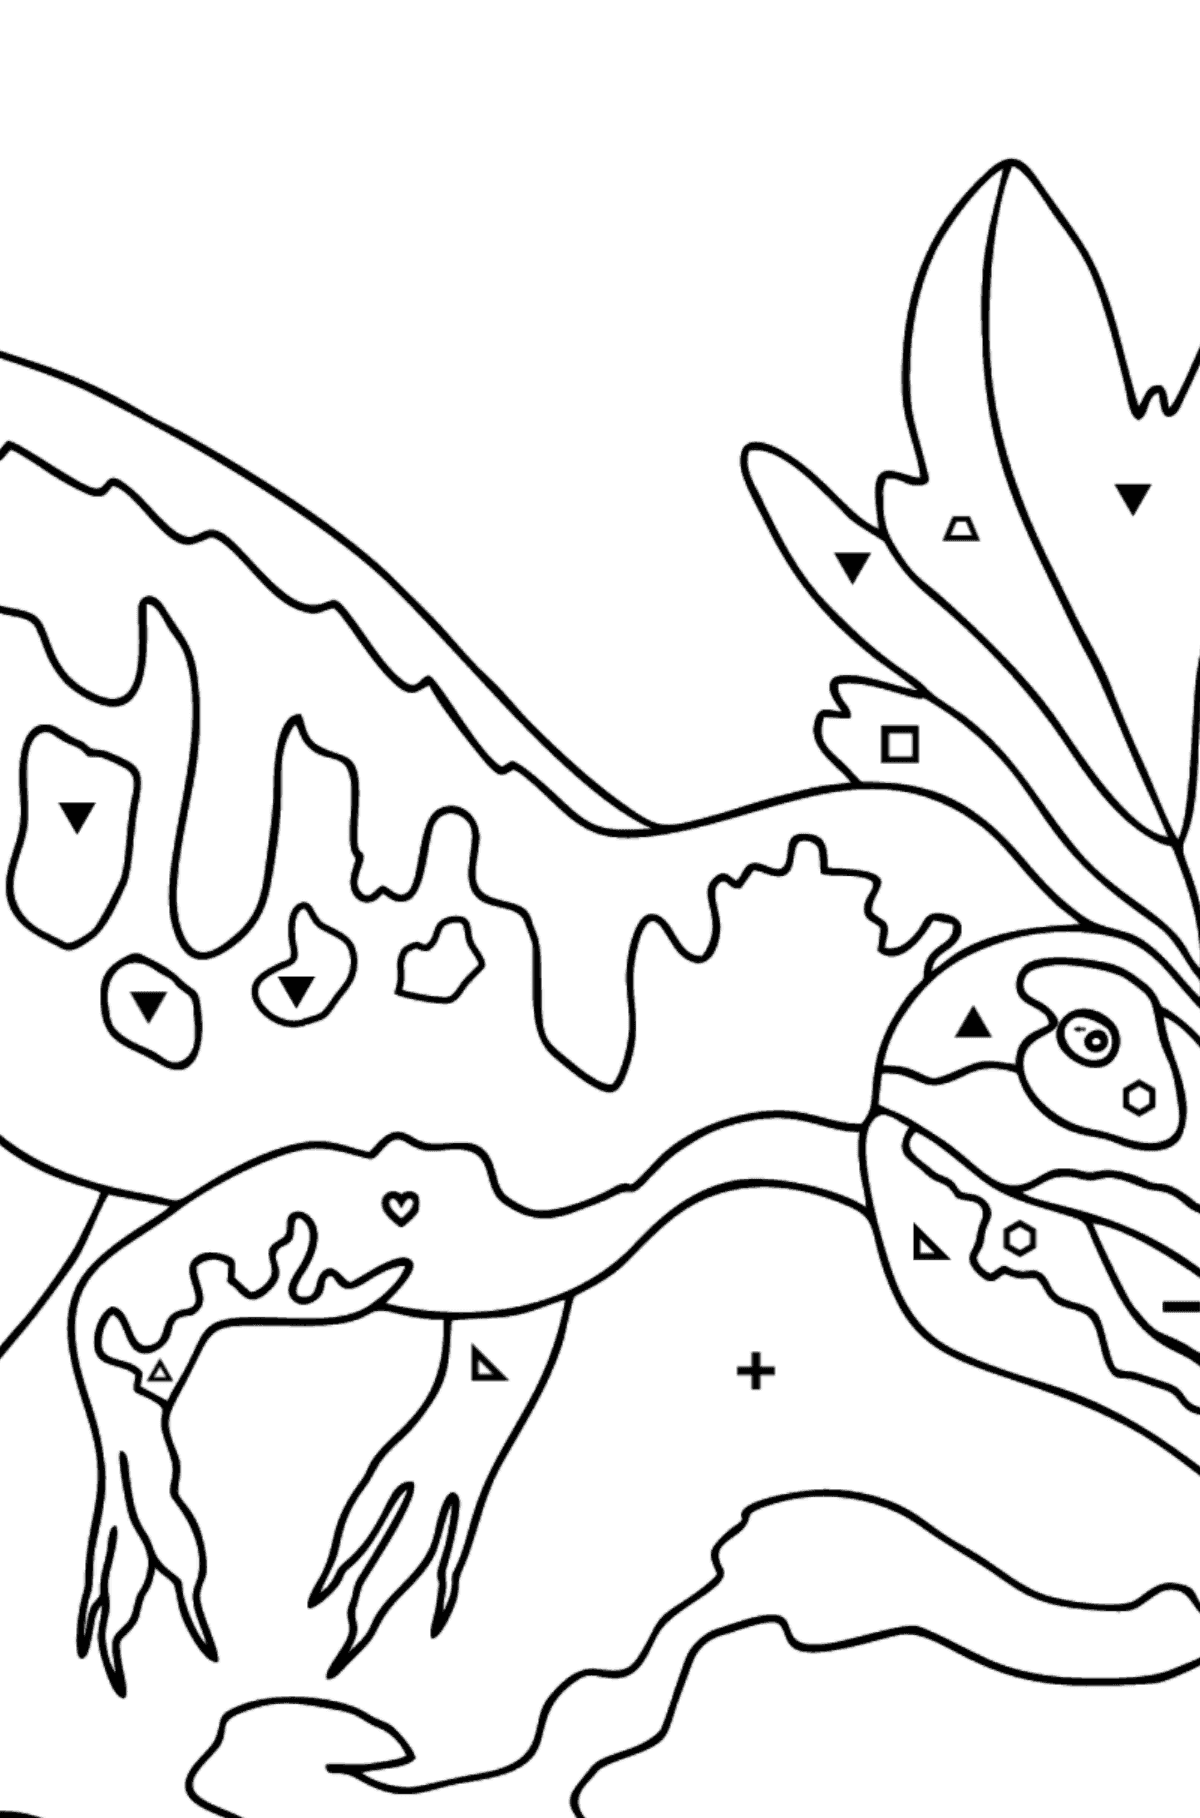 Раскраска Динозавр - Полезная картинка для Детей